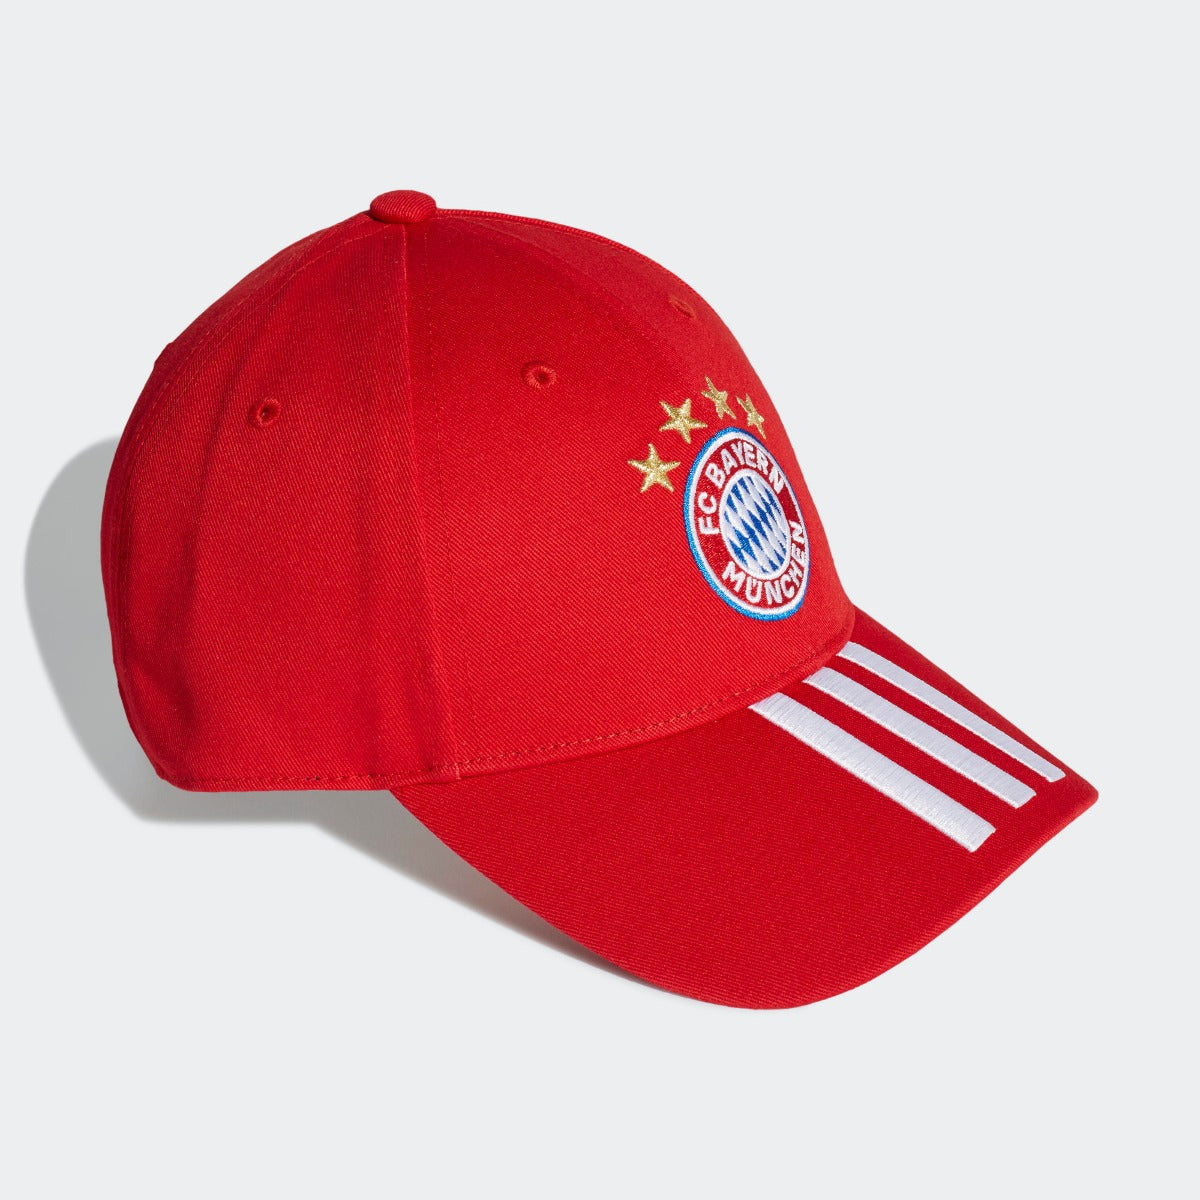 Adidas 2020-21 Bayern Munich Baseball Cap - Red-White